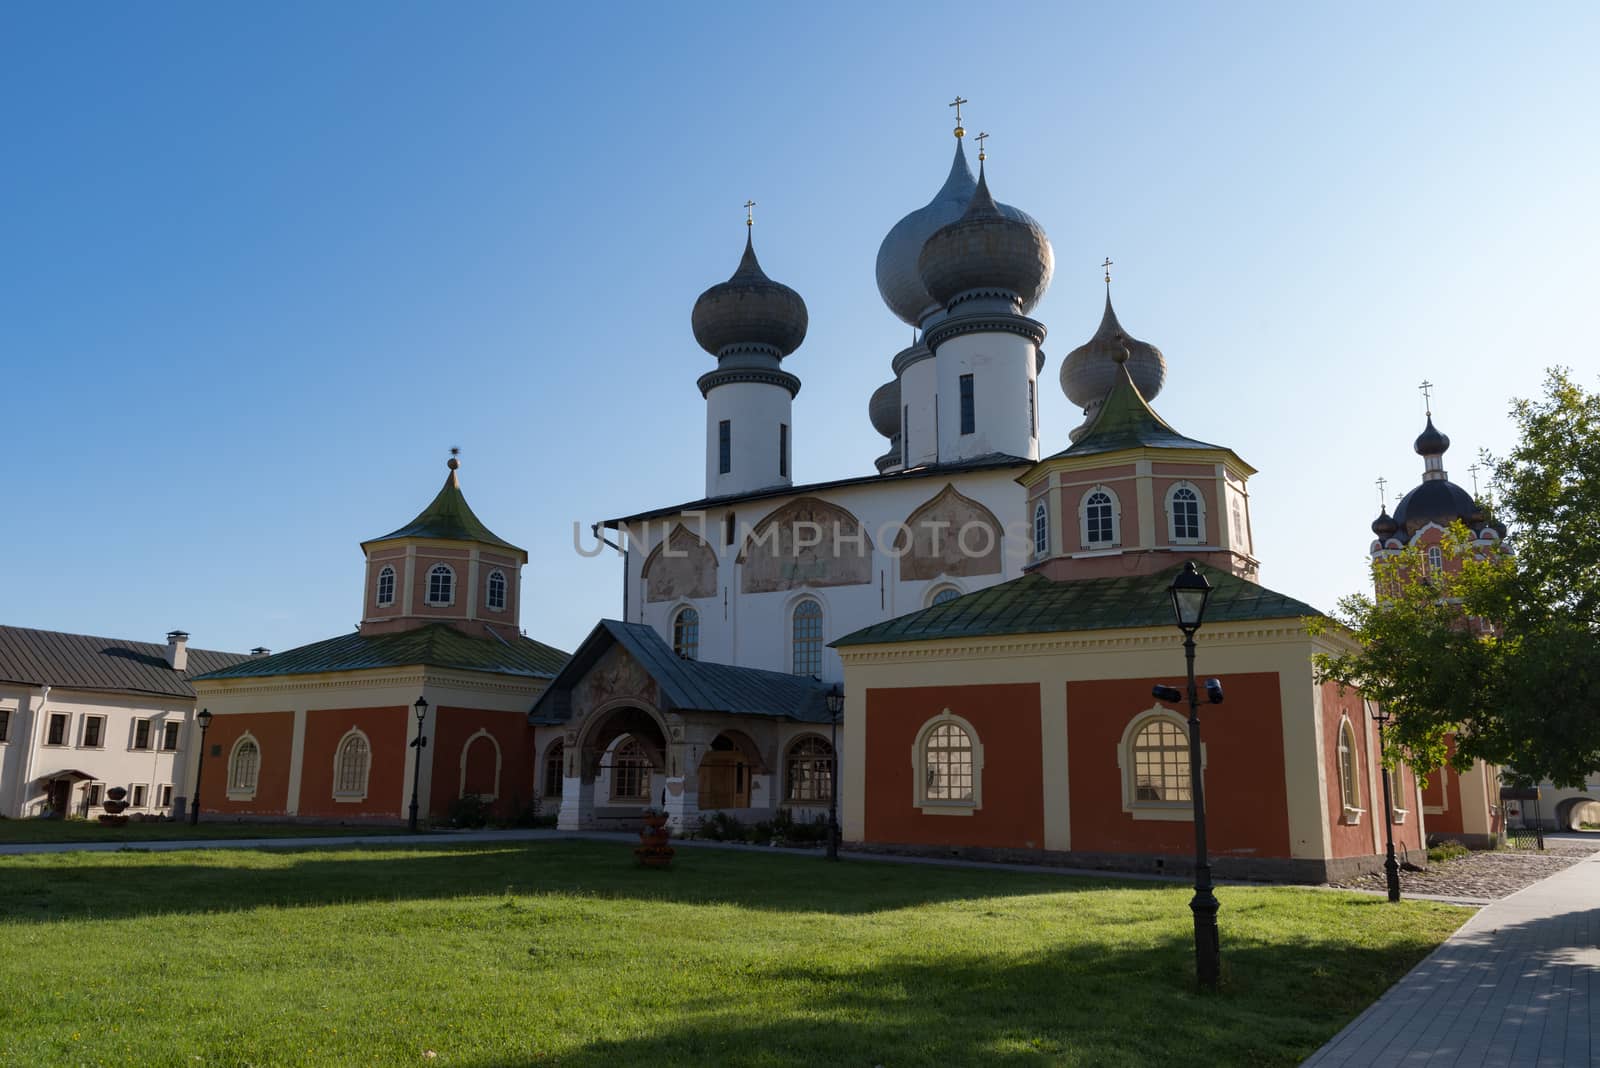 Assumption Cathedral in Tikhvin Assumption (Bogorodichny Uspensky)   Monastery,  Tikhvin, Russia